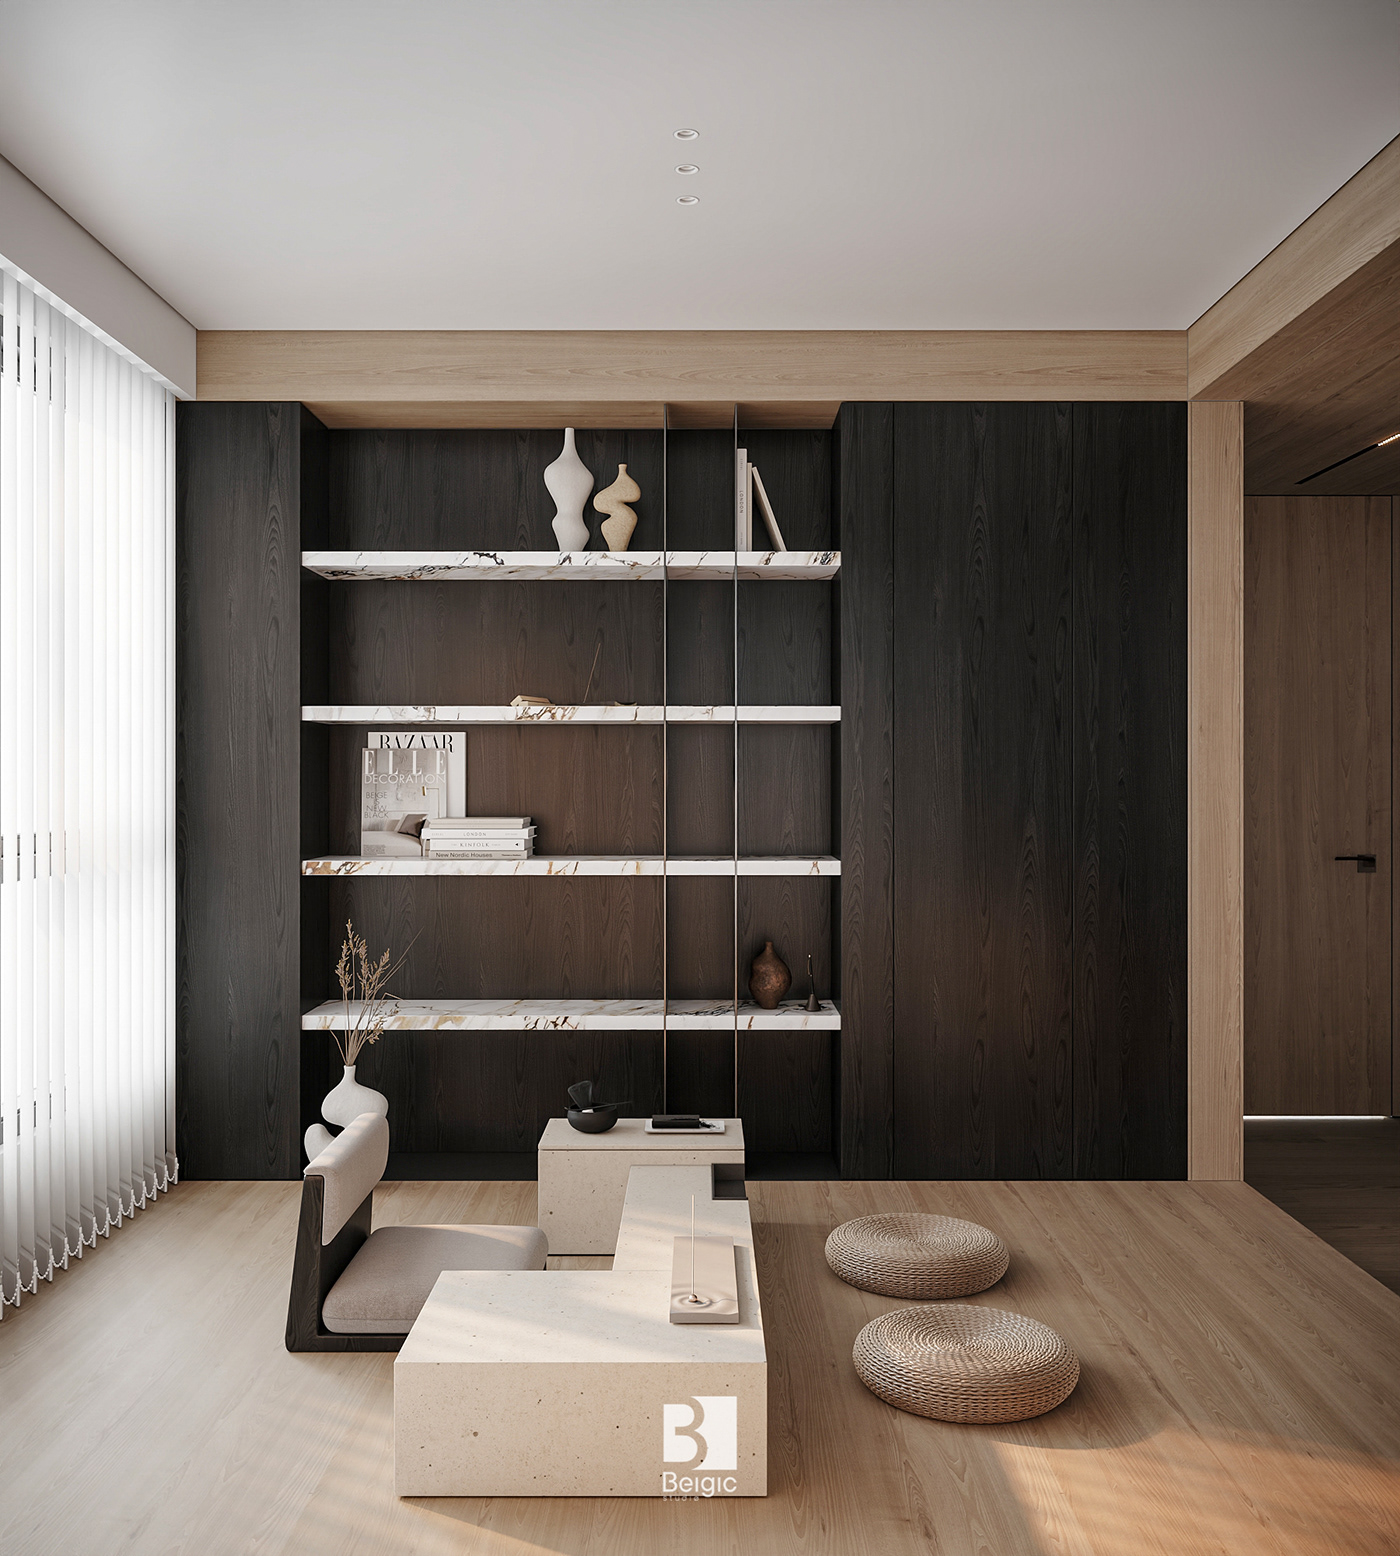 3ds max apartment architecture design designer Interior interior design  living room Render visualization